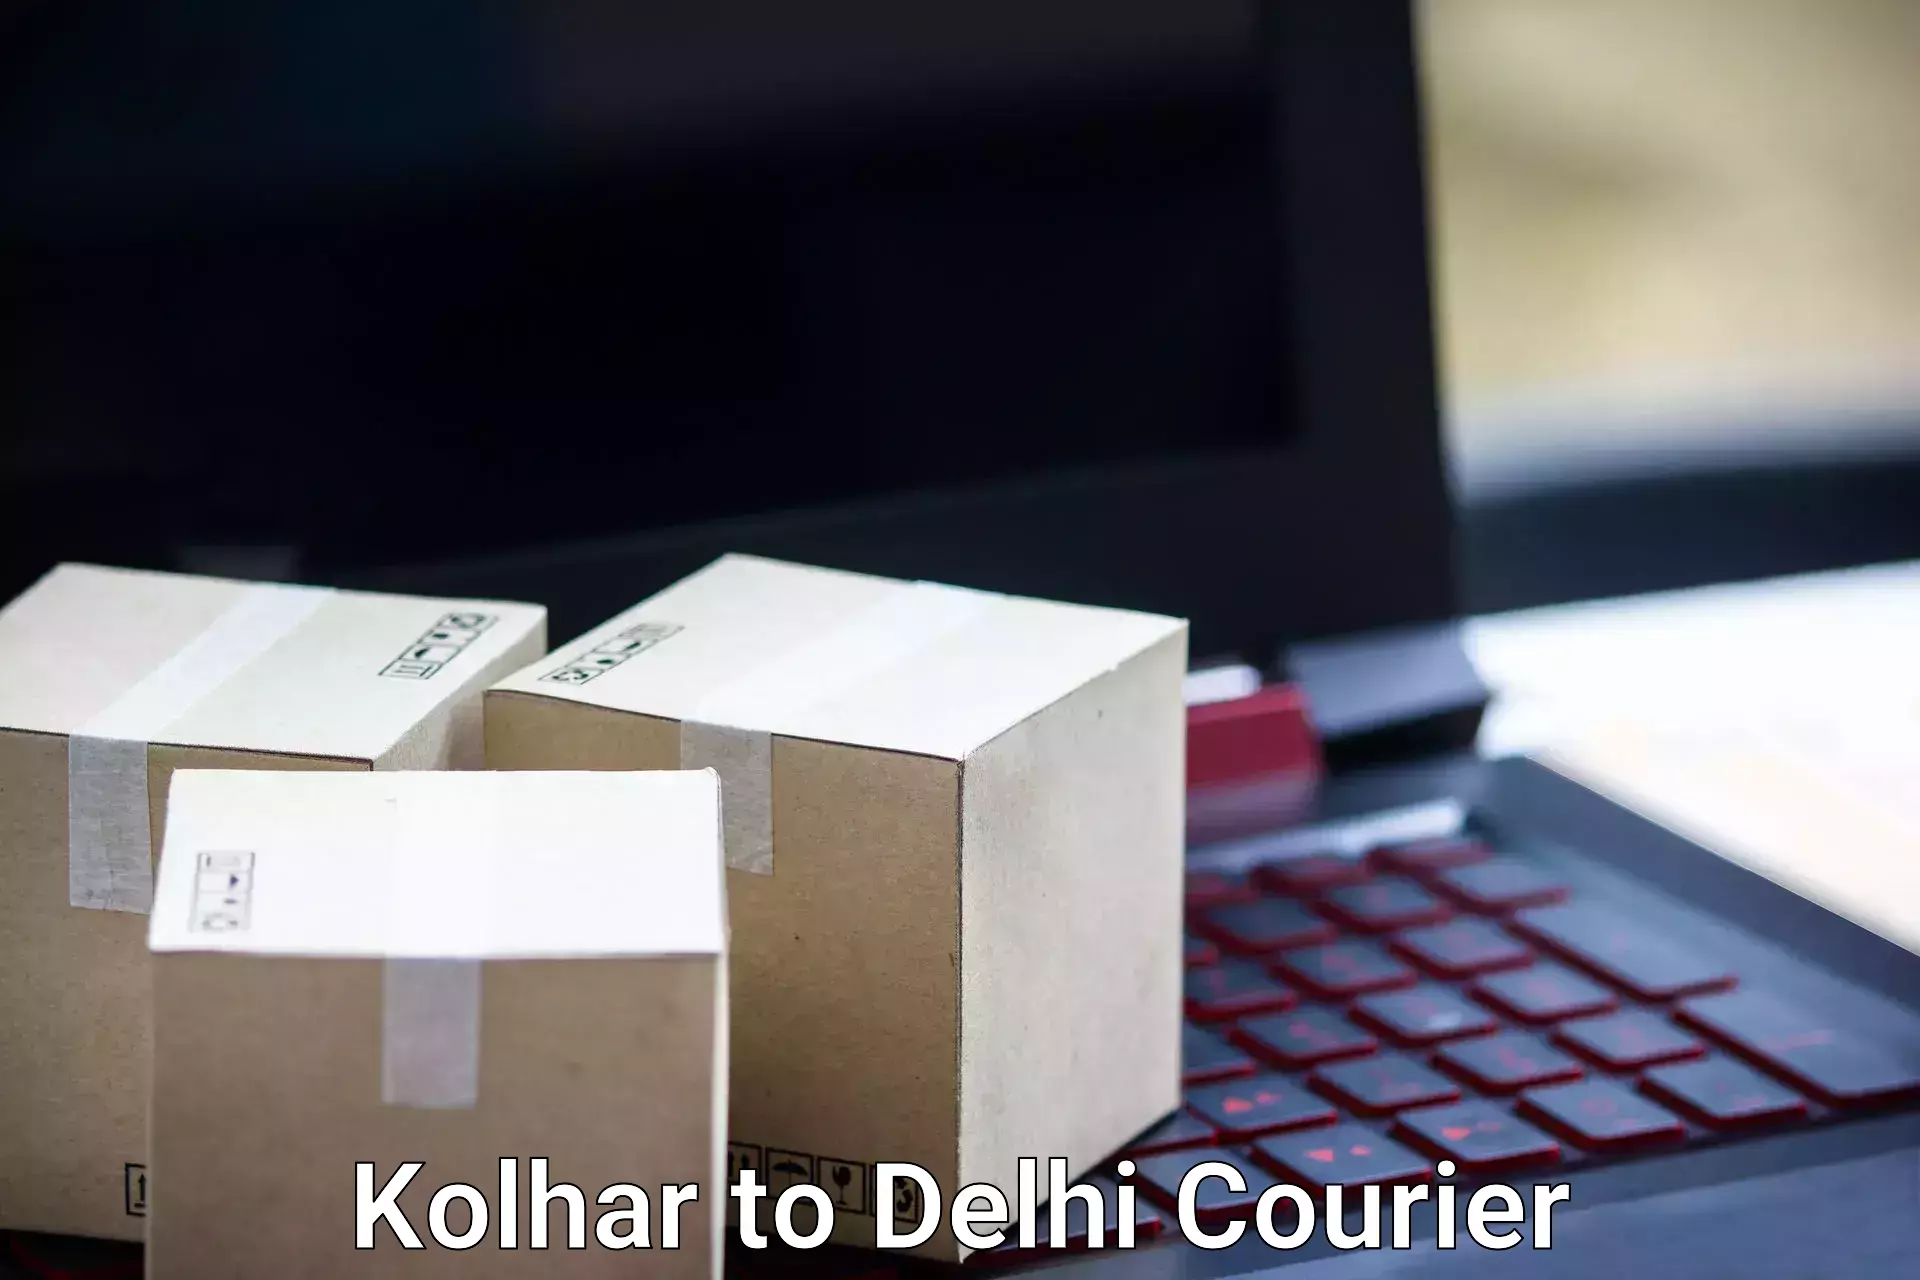 Door-to-door baggage service Kolhar to Delhi